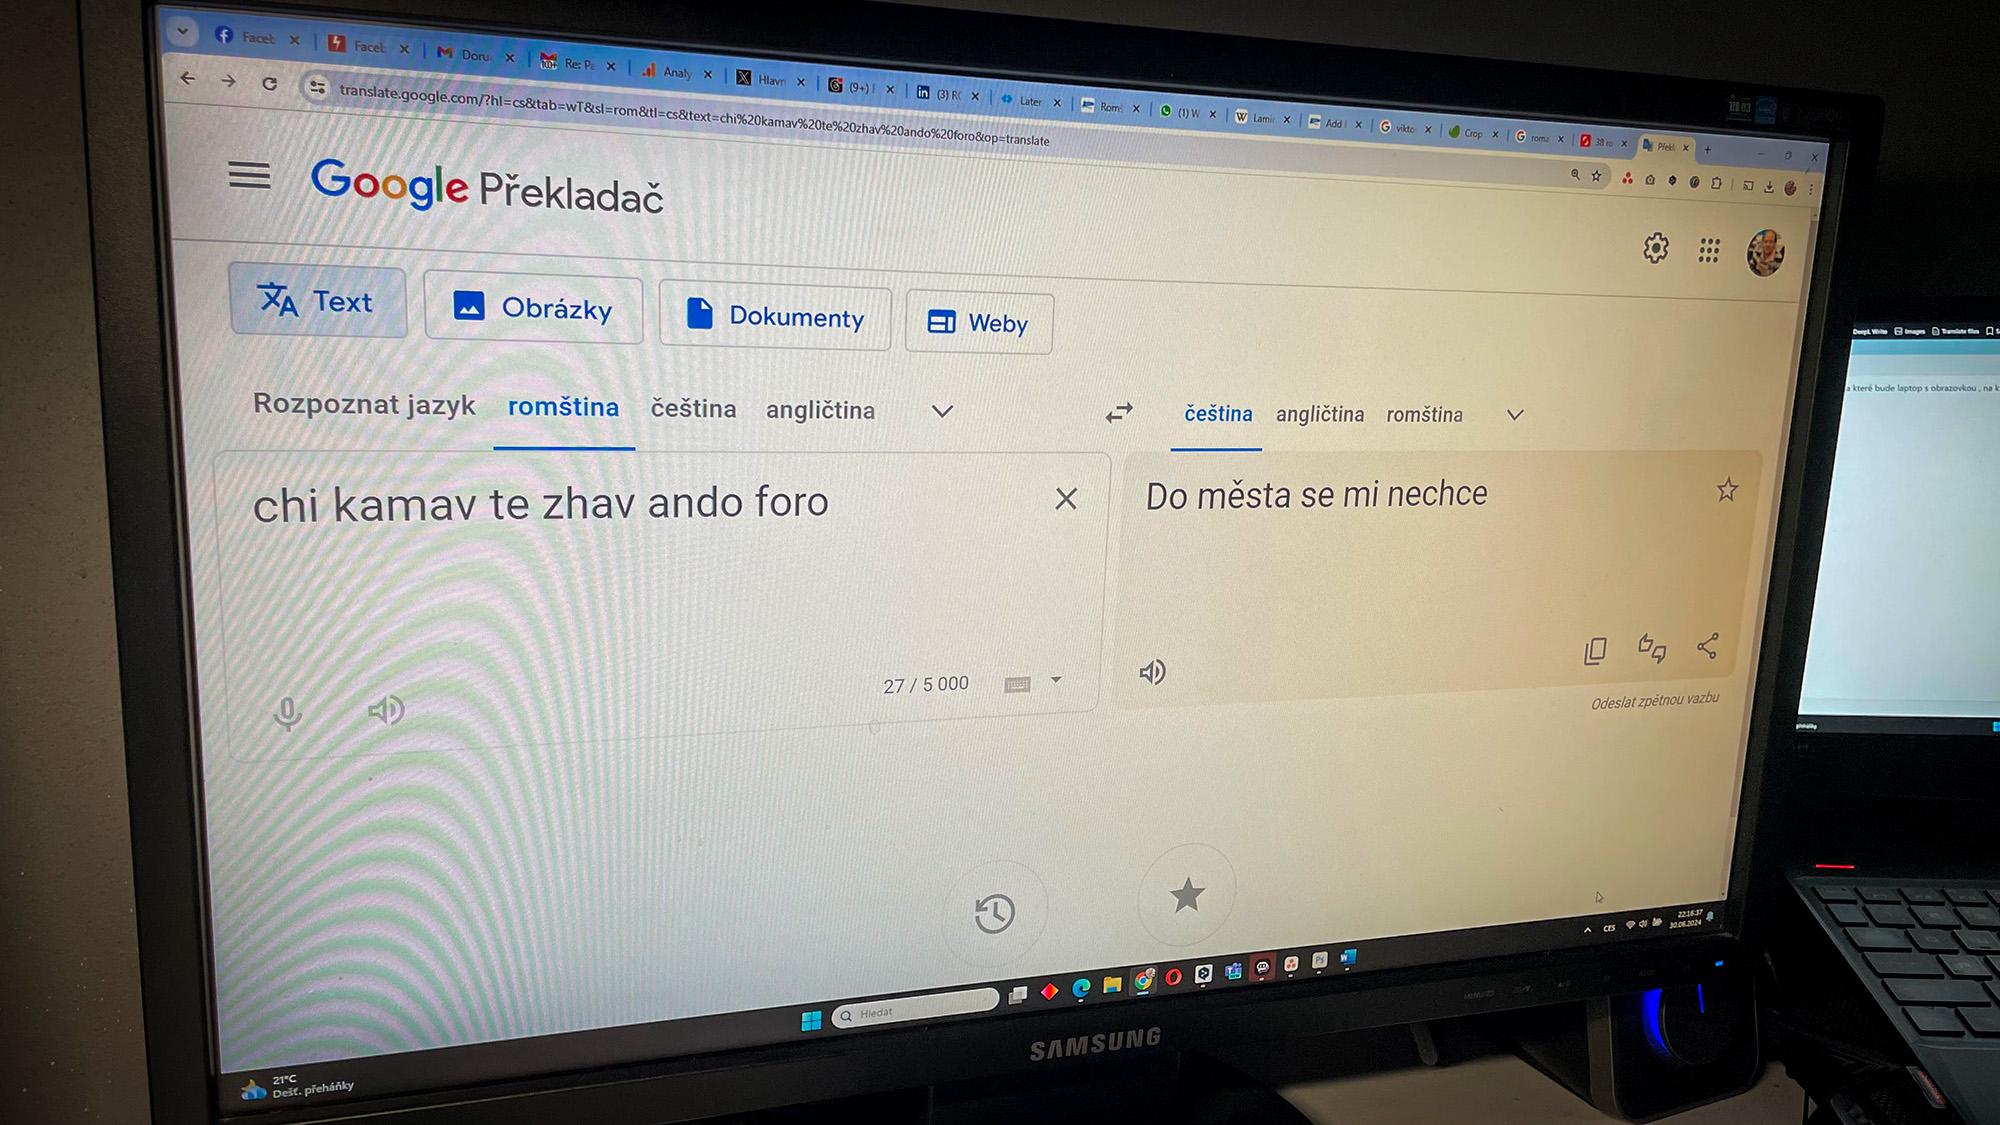 Překladač od společnosti Google nabízí možnost překladů do romštiny a z romštiny (FOTO: Zdeněk Ryšavý)